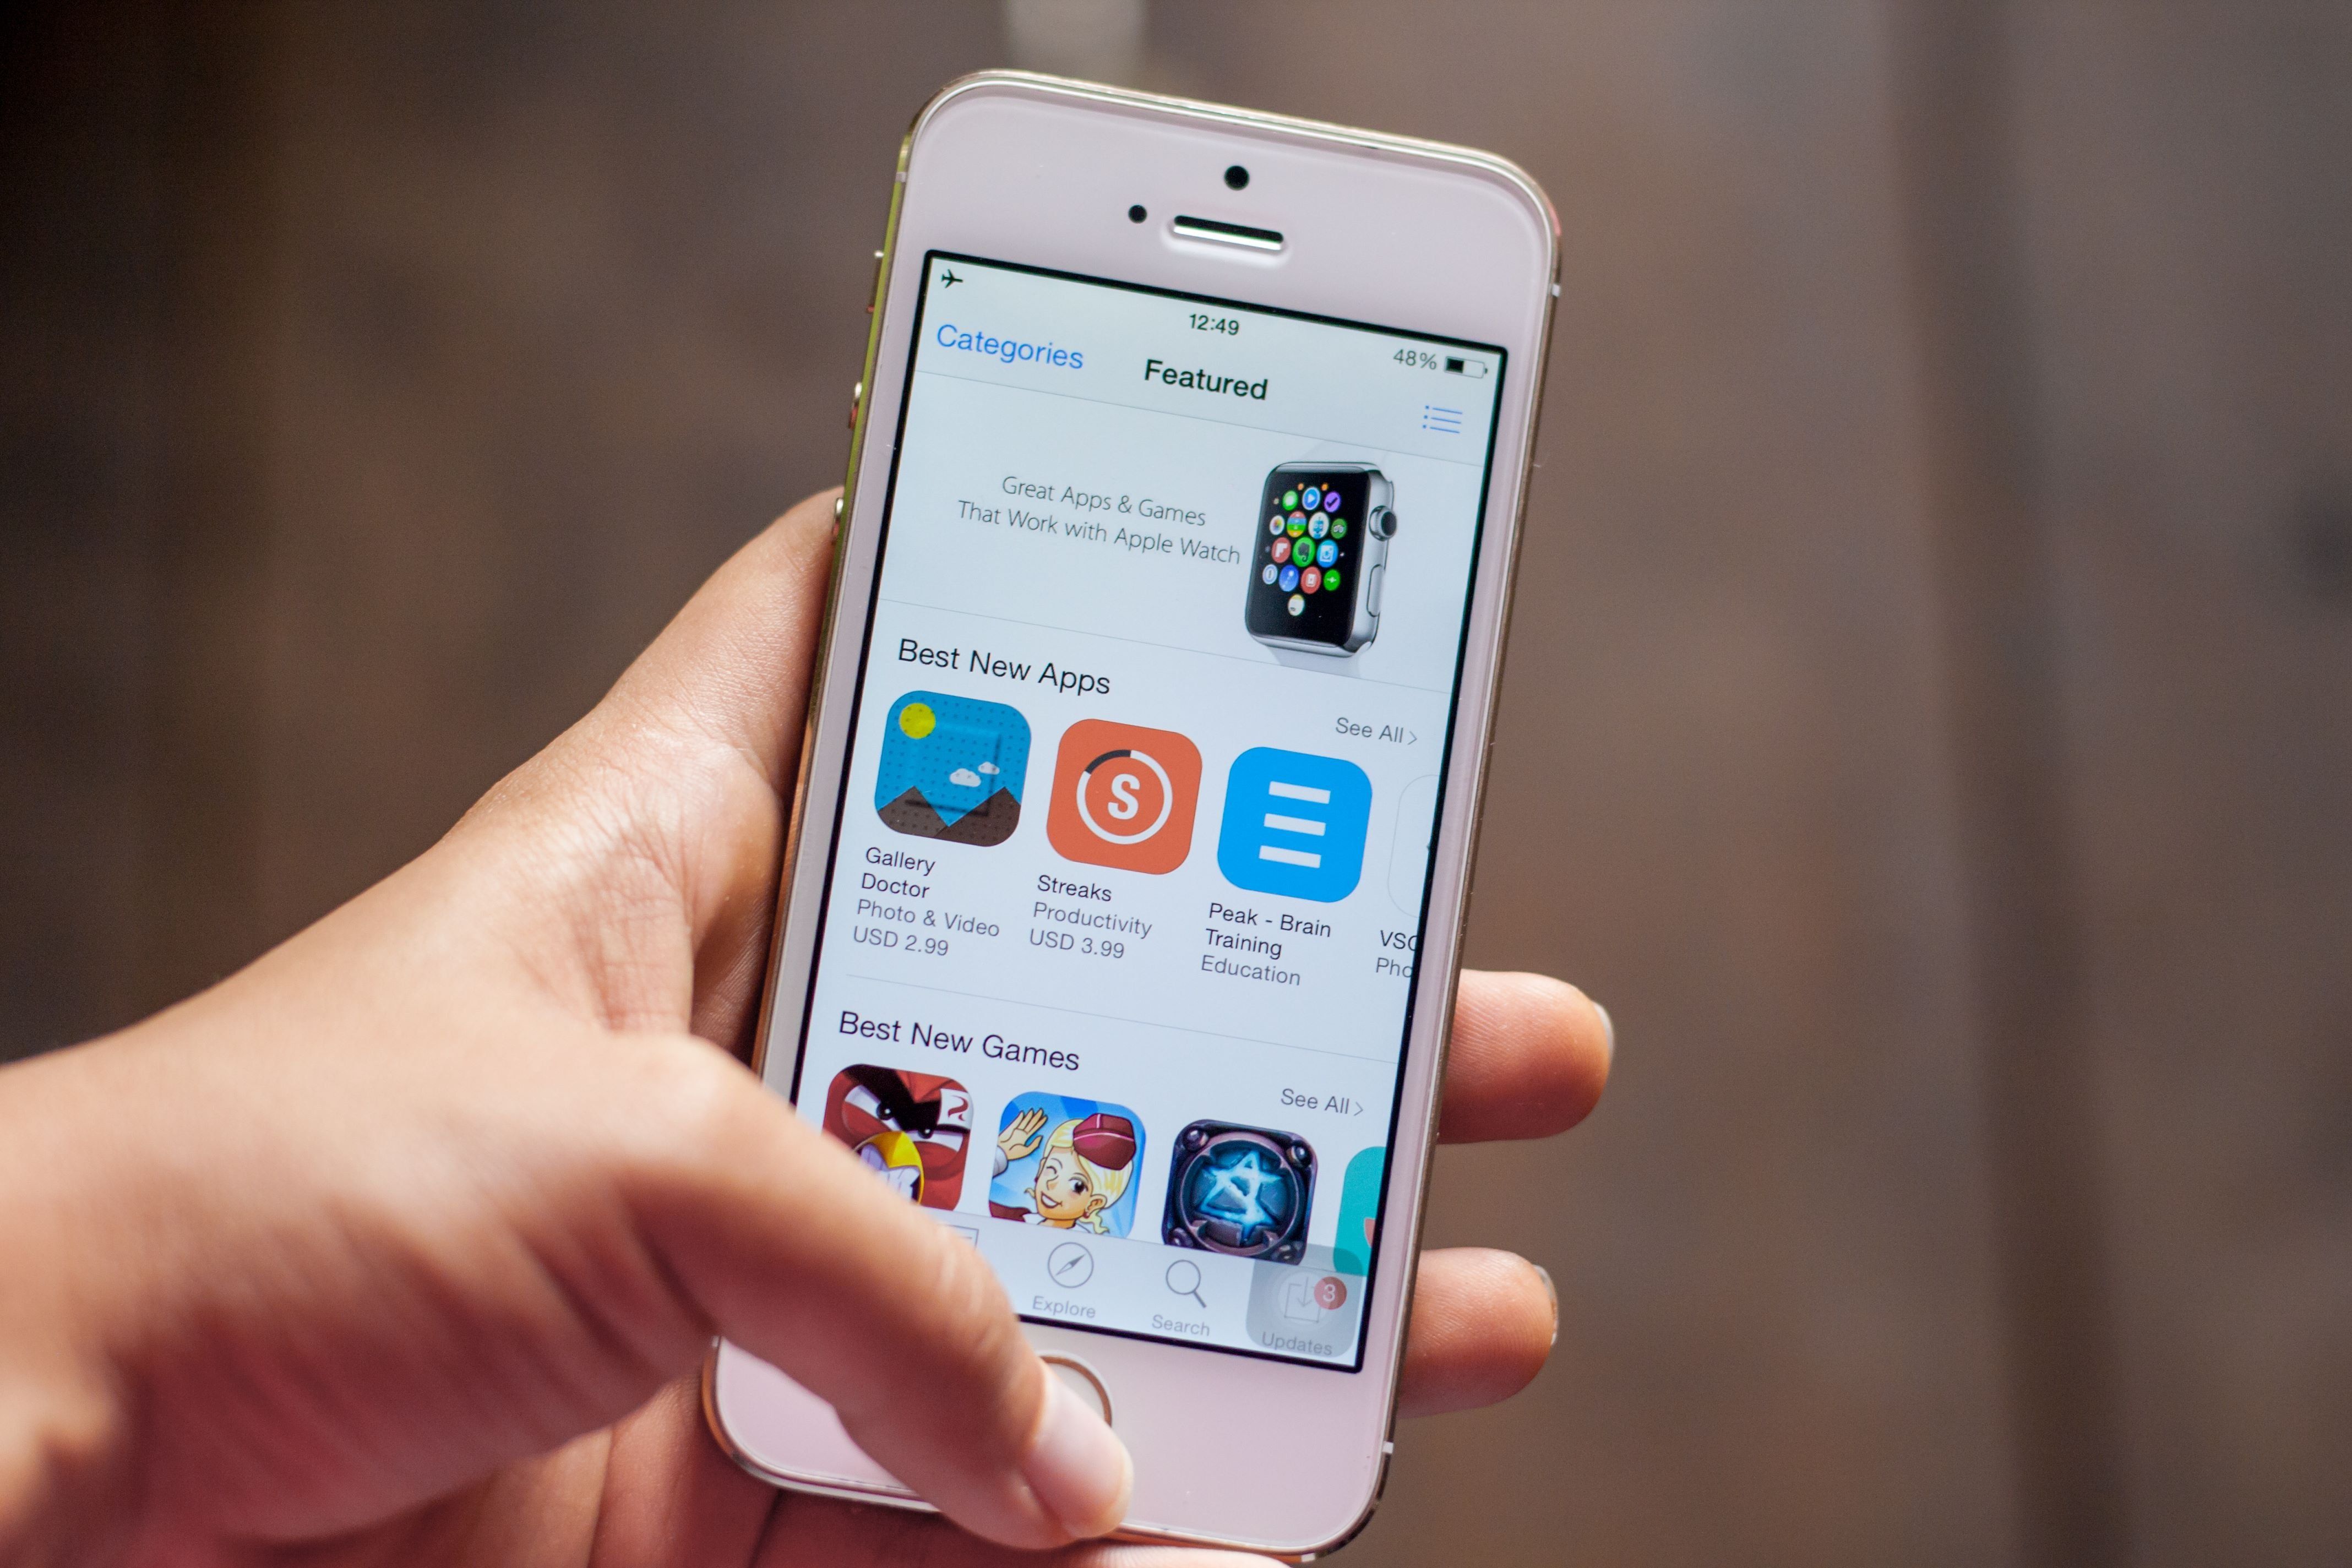 Megnevezték a legkiválóbb appokat például iOS-en, iPadOS-en, macOS-en és watchOS-en is